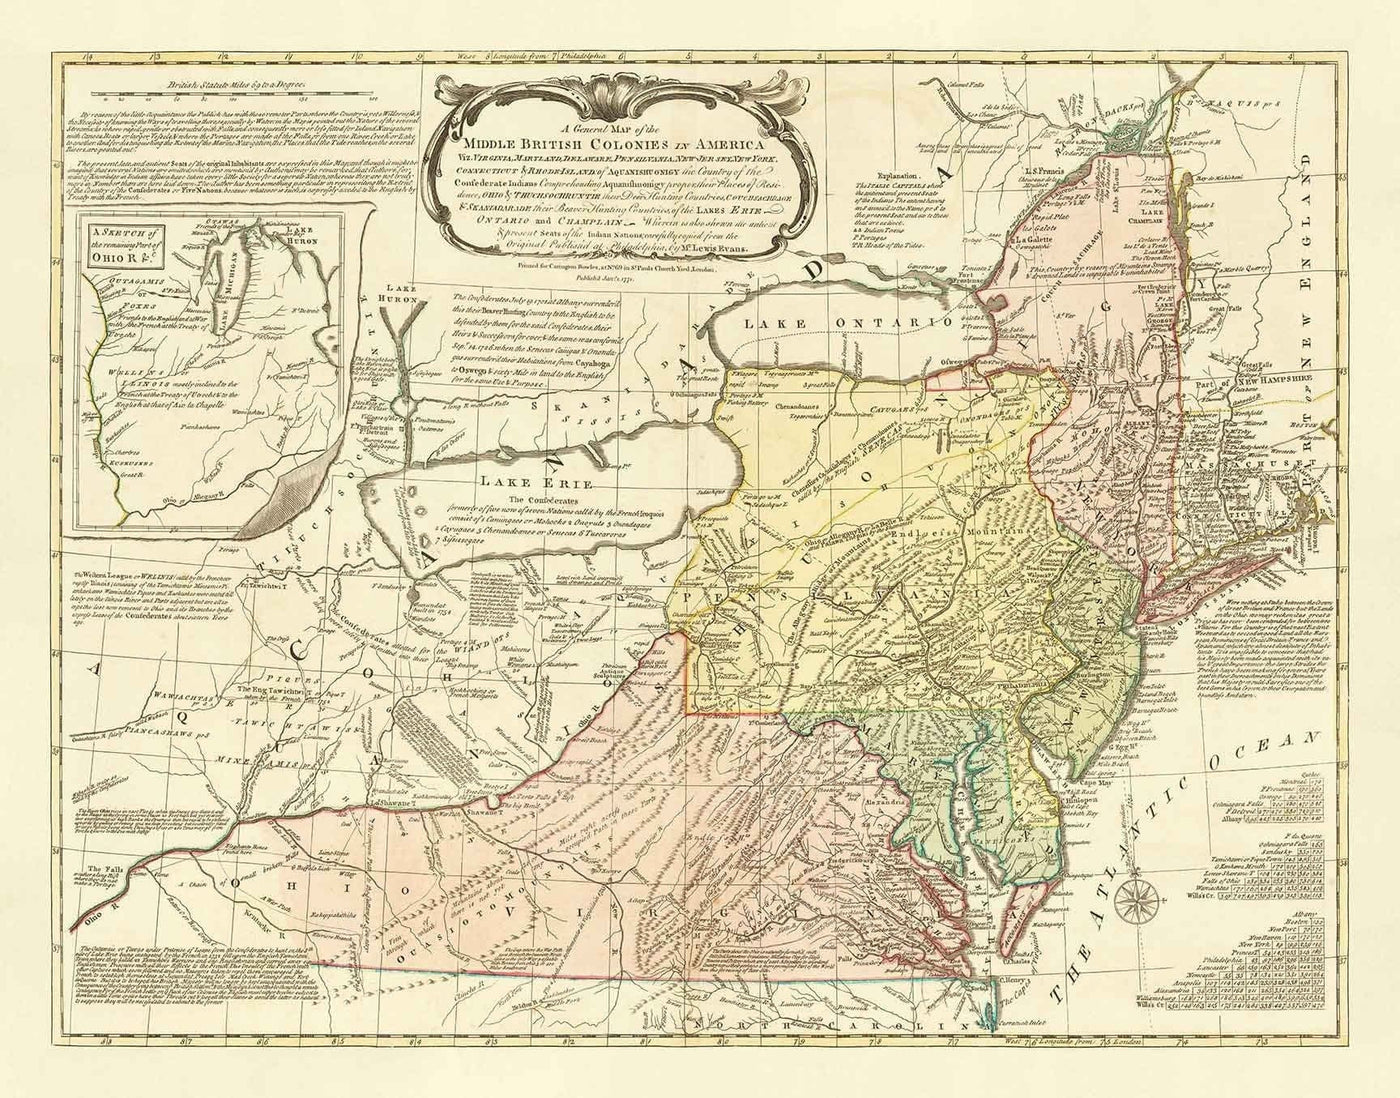 Antiguo mapa de las colonias británicas en América de 1755 de Evans & Bowles - Asentamientos europeos y nativos, Estados Unidos antes de la independencia